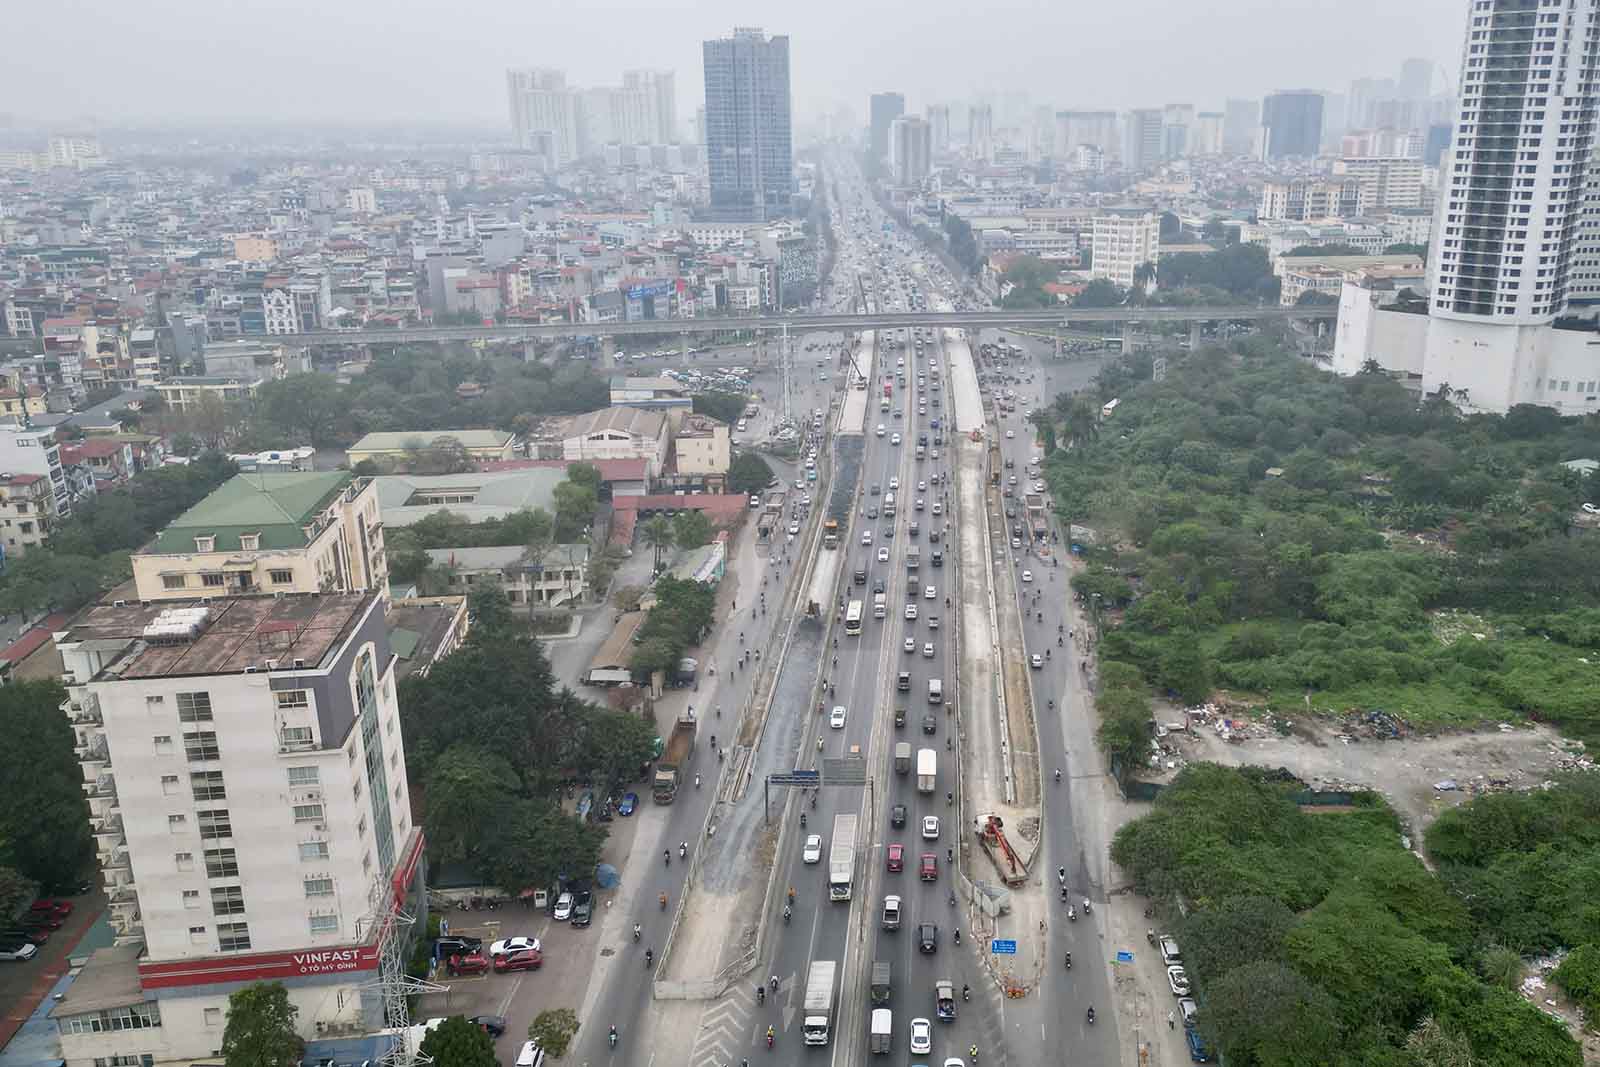 Nhằm tăng năng lực kết nối của cầu Mai Dịch với đường Vành đai 3 trên cao và để giảm ùn tắc, Hà Nội cho xây dựng 2 cầu vượt thép song song với cầu vượt Mai Dịch từ đầu năm 2023. Có tổng mức đầu tư hơn 340 tỉ đồng.